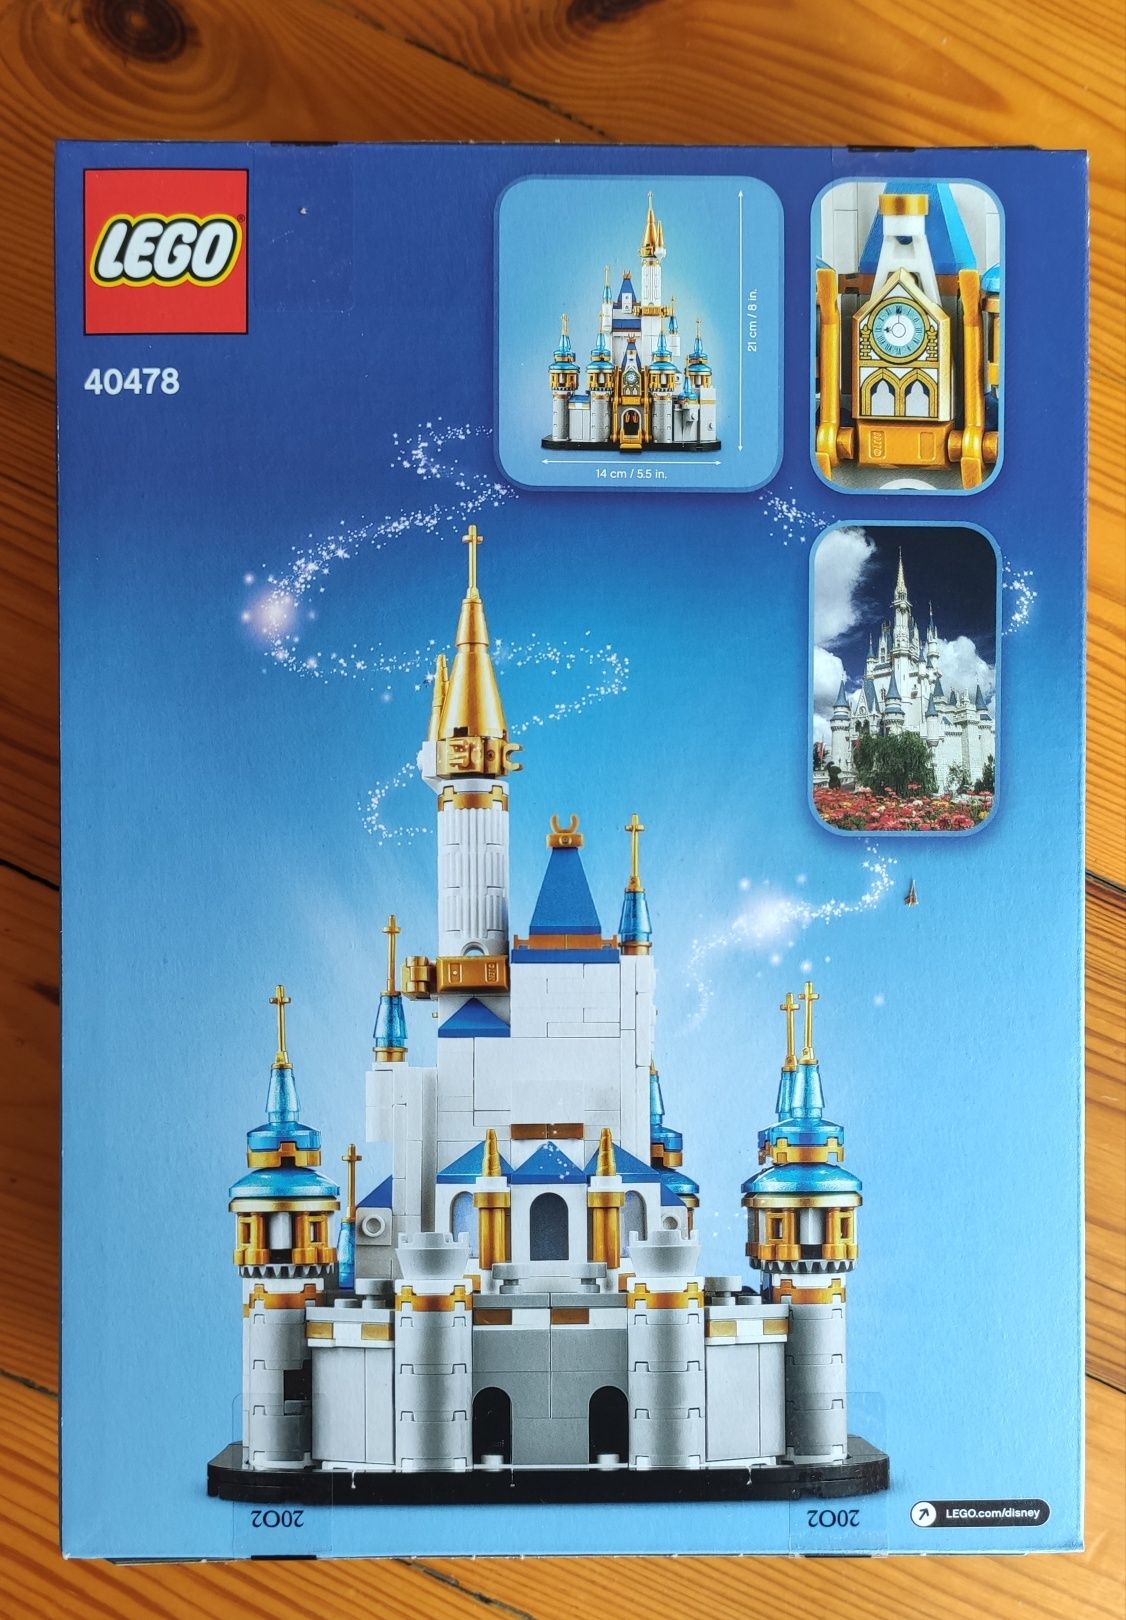 Lego 40478 Miniaturowy zamek Disneya set ekskluzywny